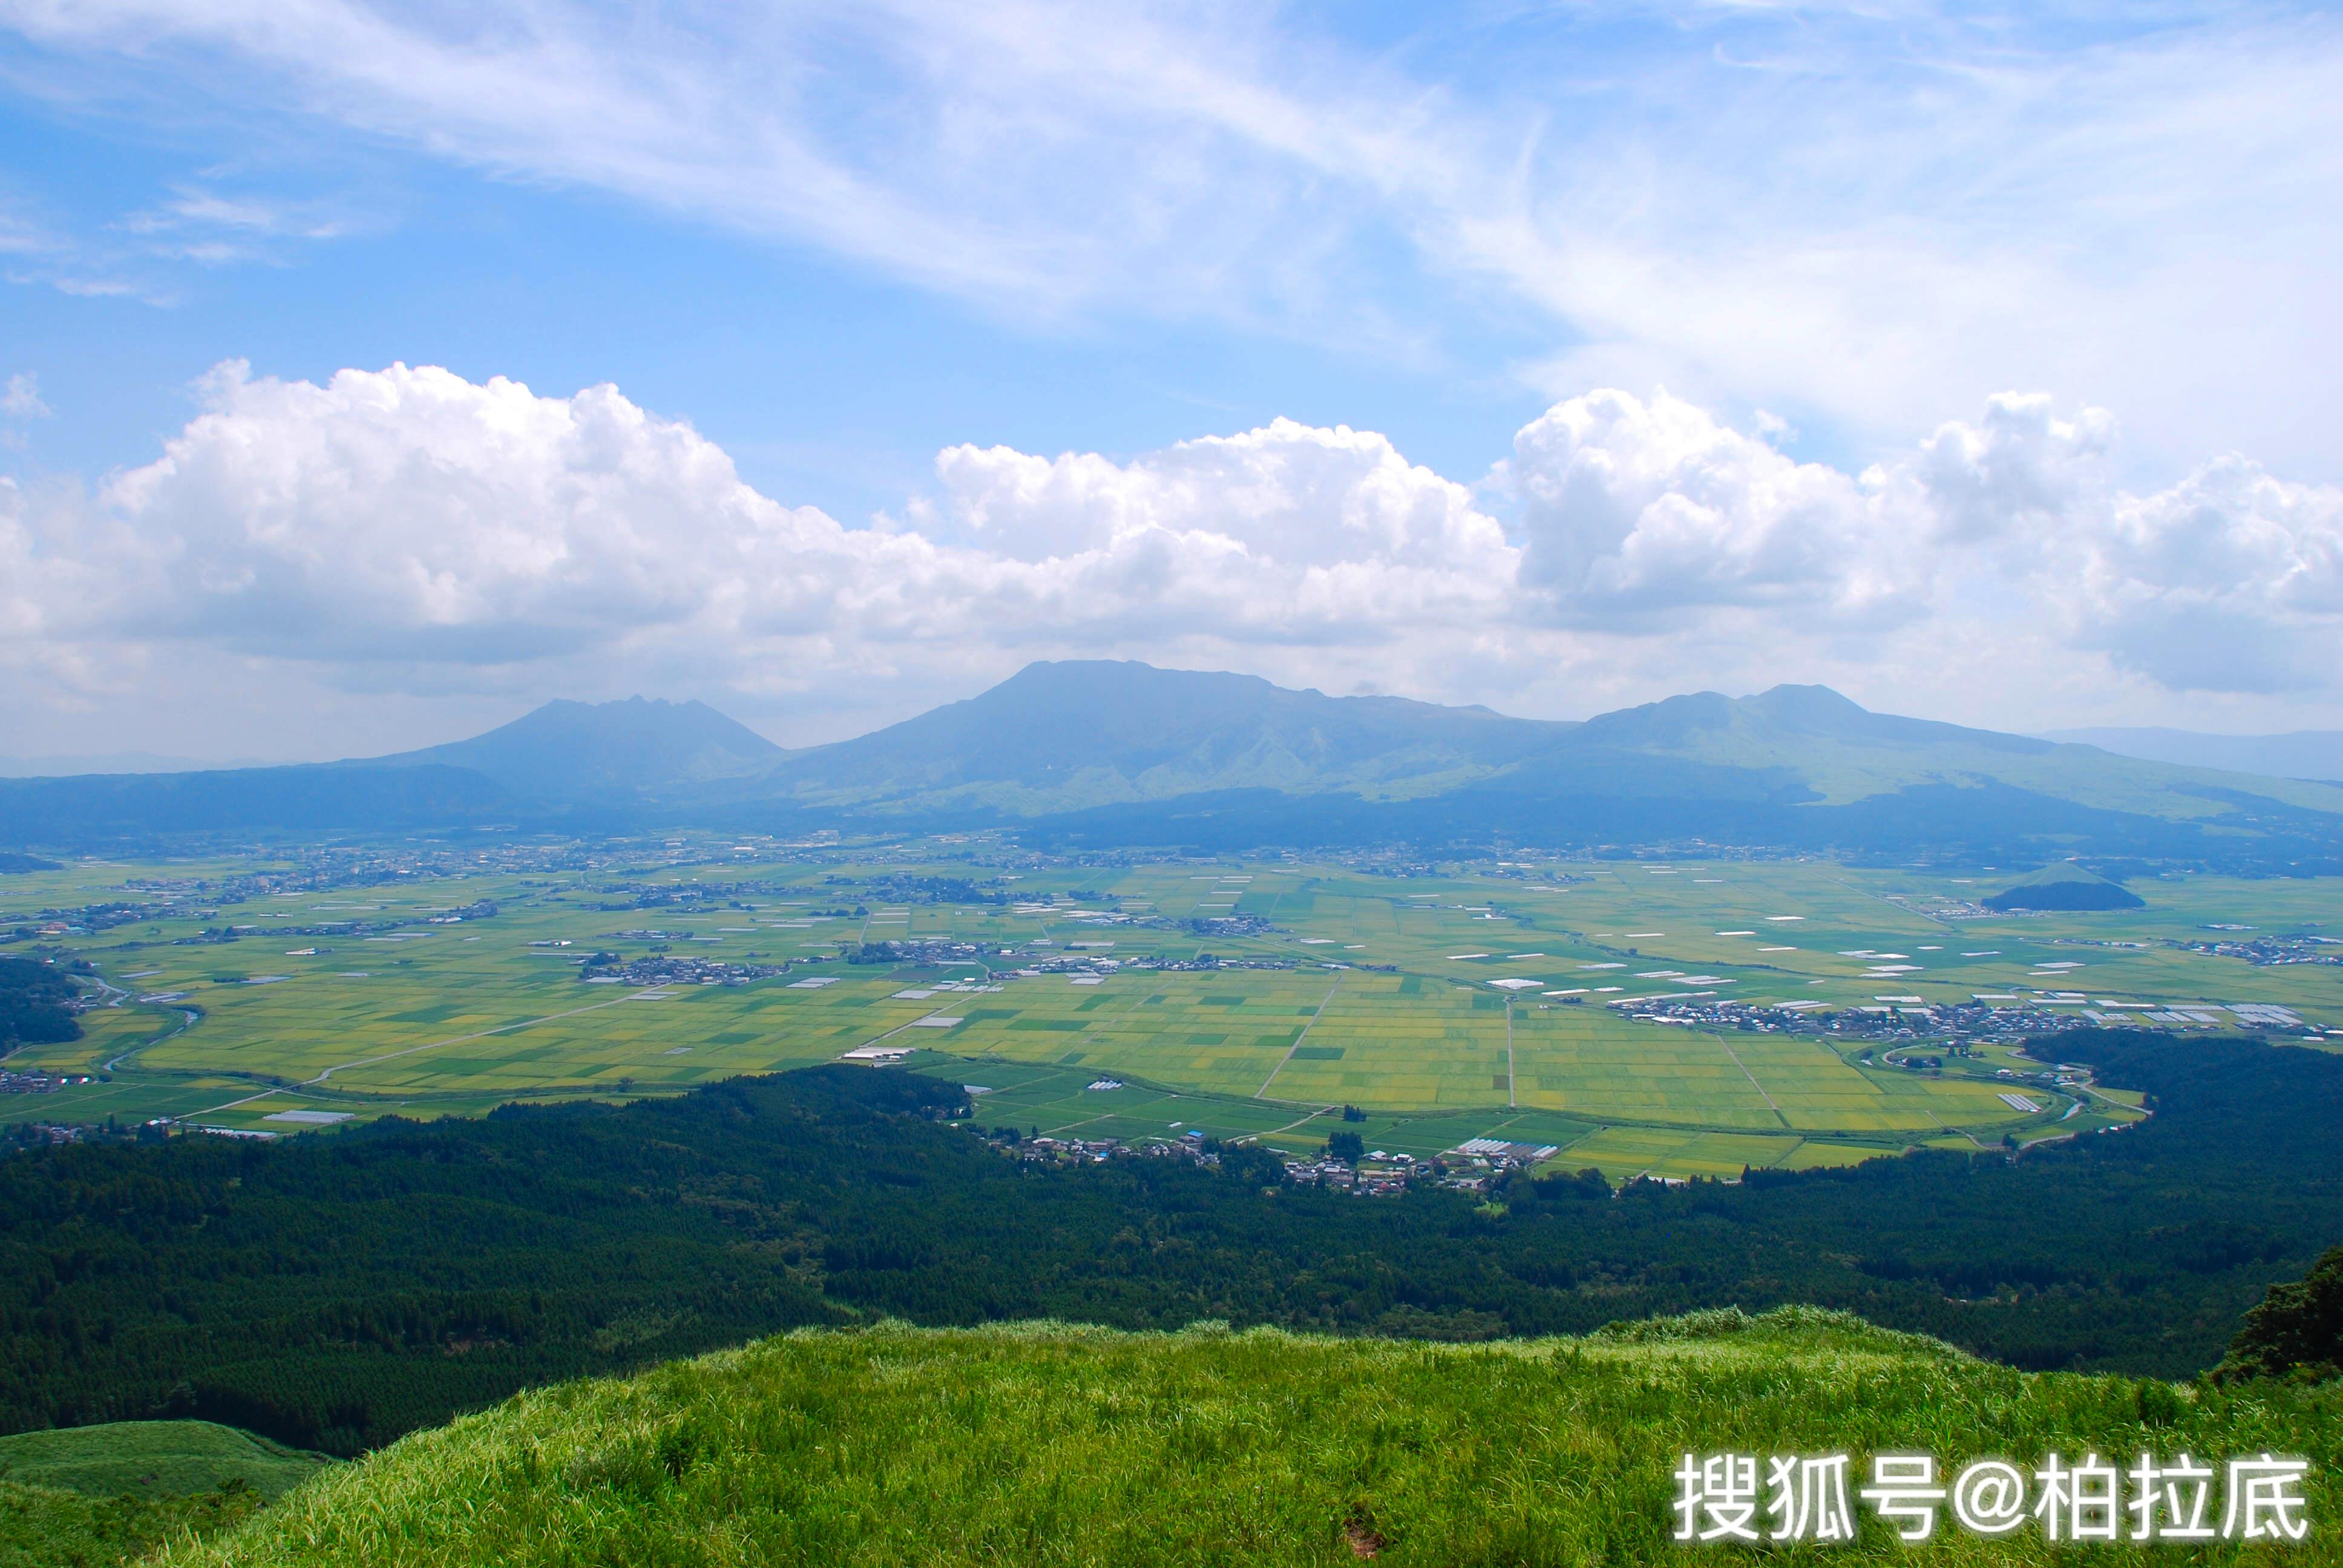 景色别致的阿苏火山,人文气息浓厚的熊本古城